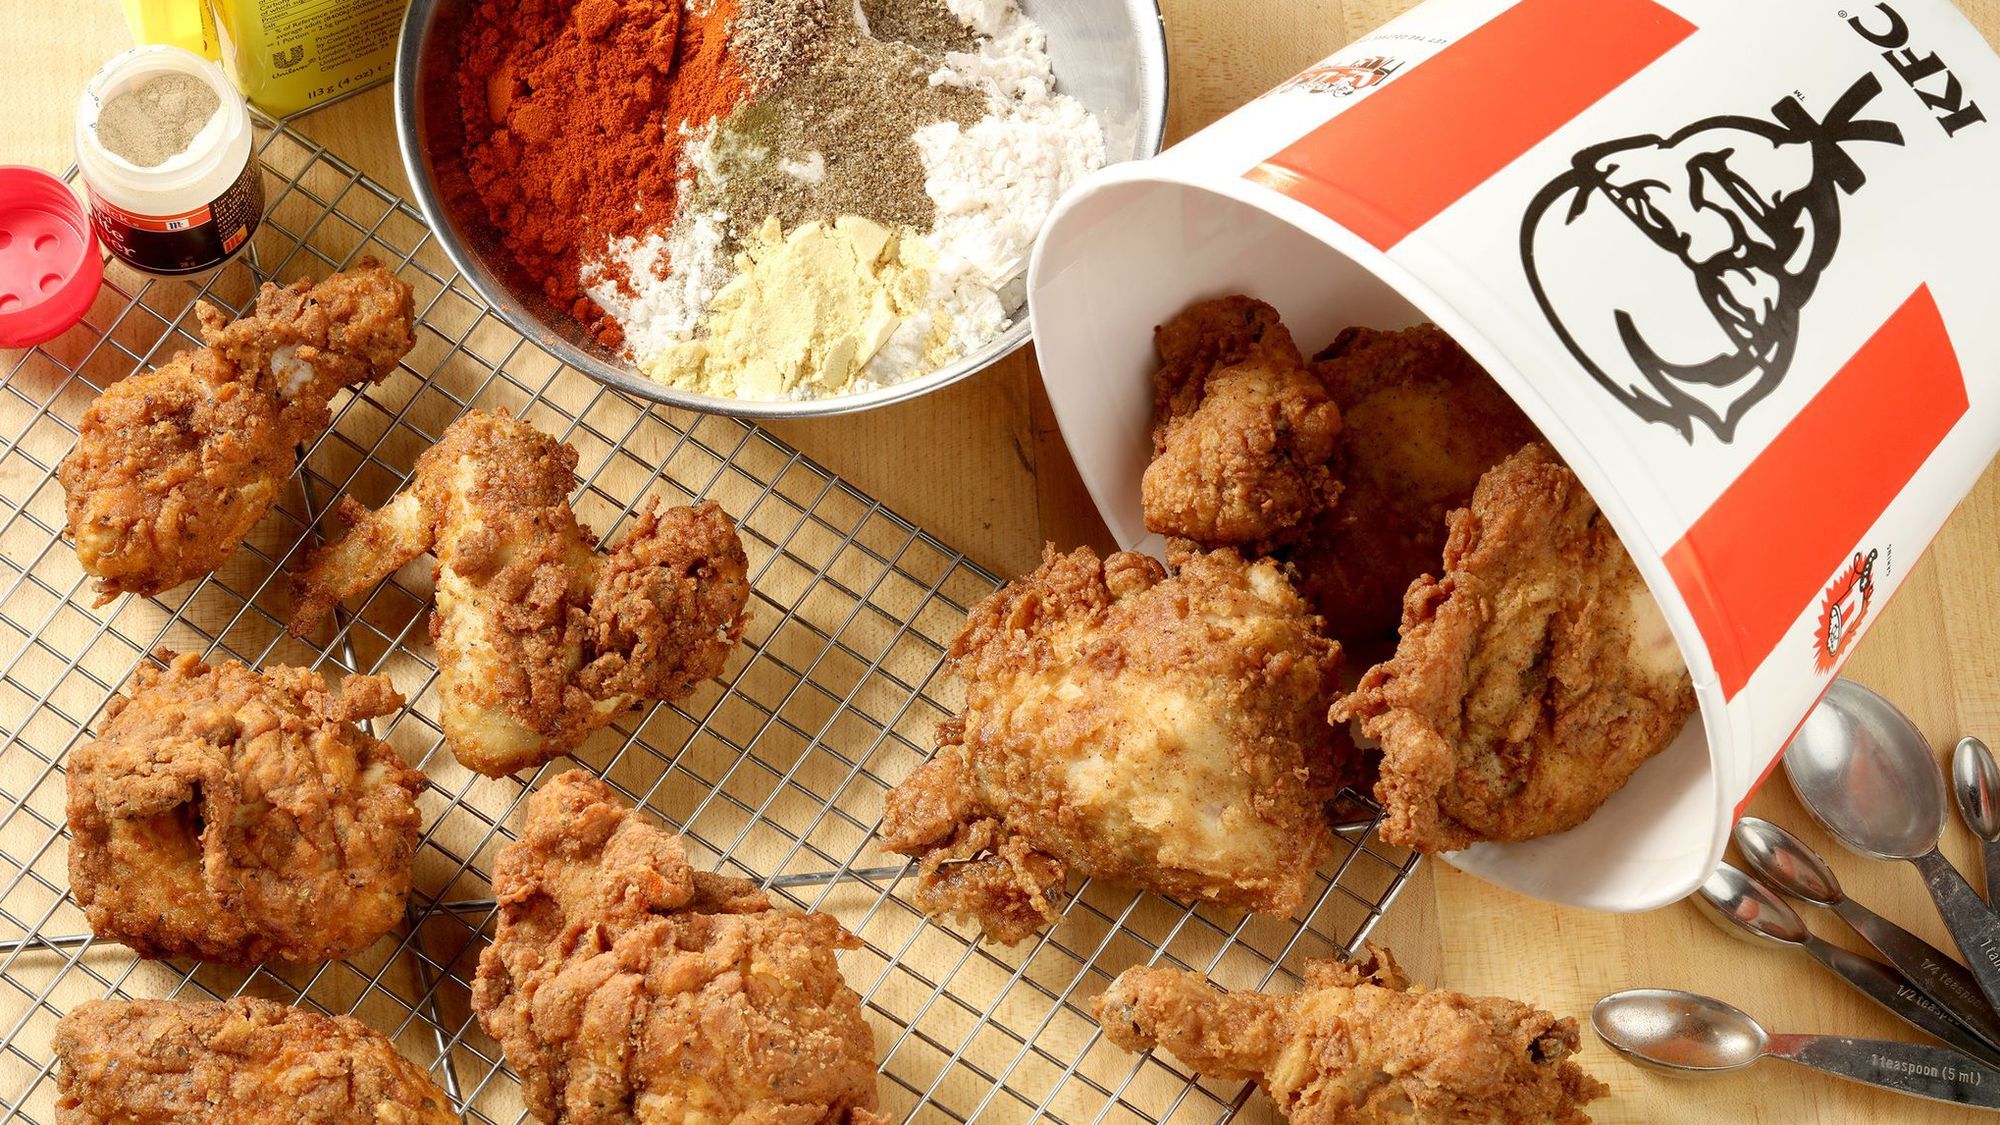 Η μυστική συνταγή για κοτόπουλο KFC αποκαλύφθηκε ΕΠΙΤΕΛΟΥΣ!